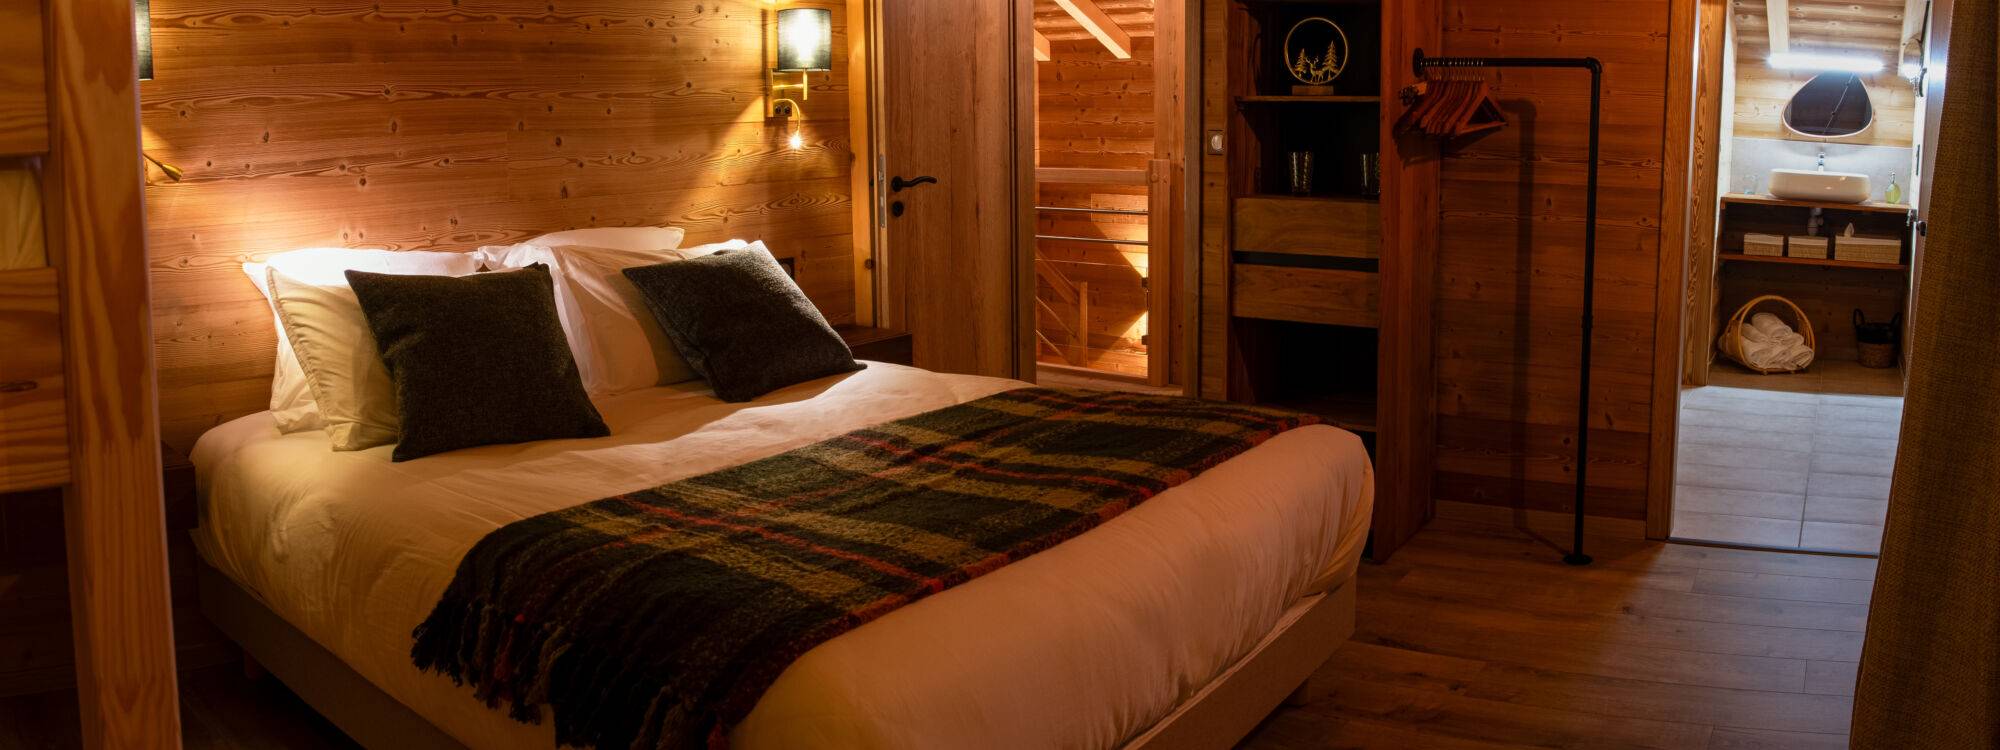 Chalet avec spa et sauna : hébergement touristique familial dans les Vosges à Le Saulcy vers Strasbourg Châtenois